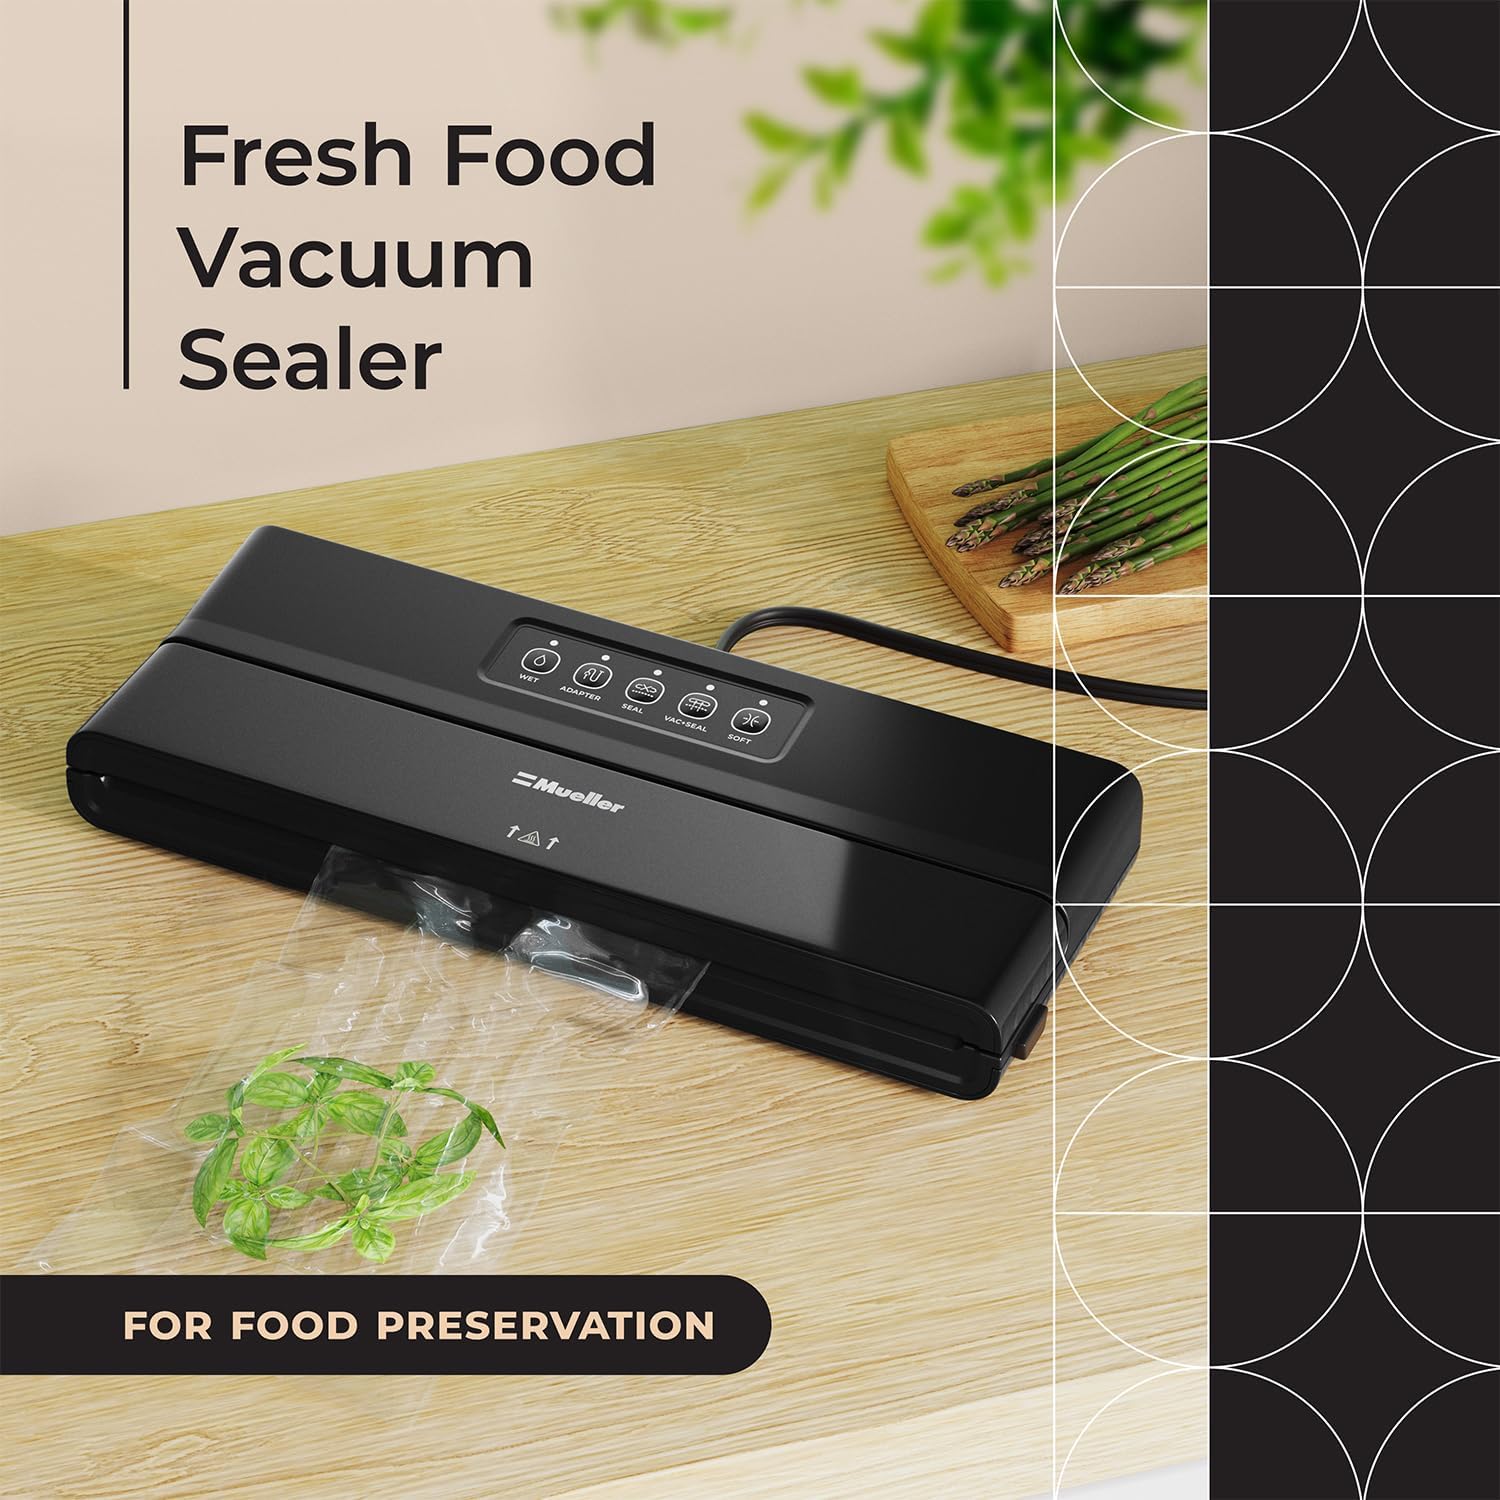 Vremi Vacuum Sealer Machine, Designed for Food Preservation and Sous Vide